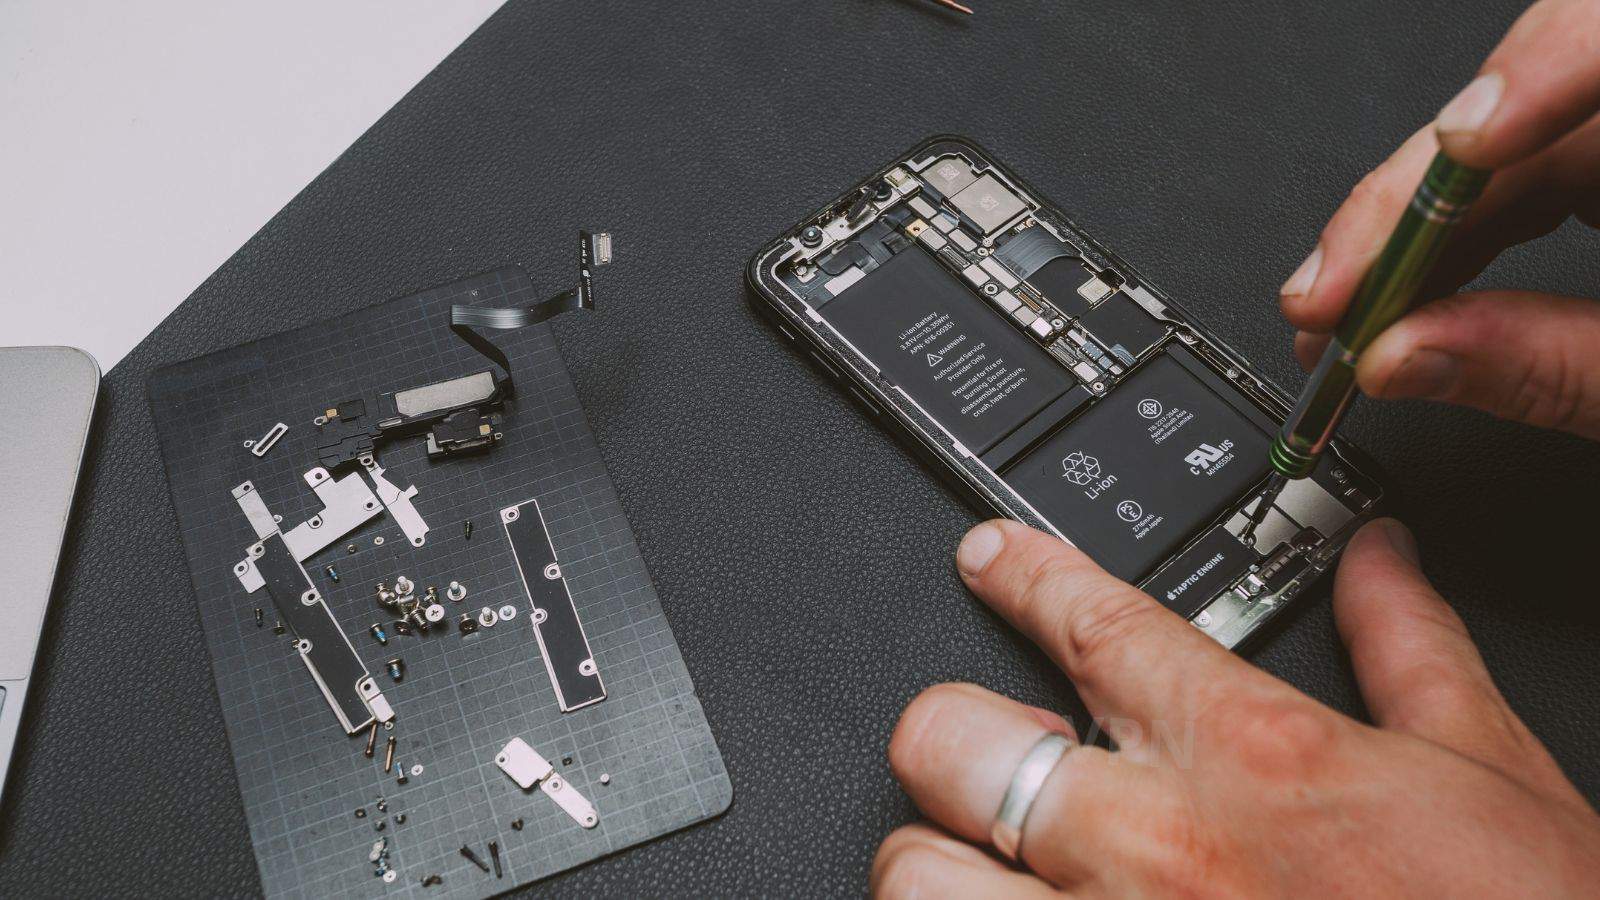  Apple: possibili le riparazioni fai da te con componenti originali usate 